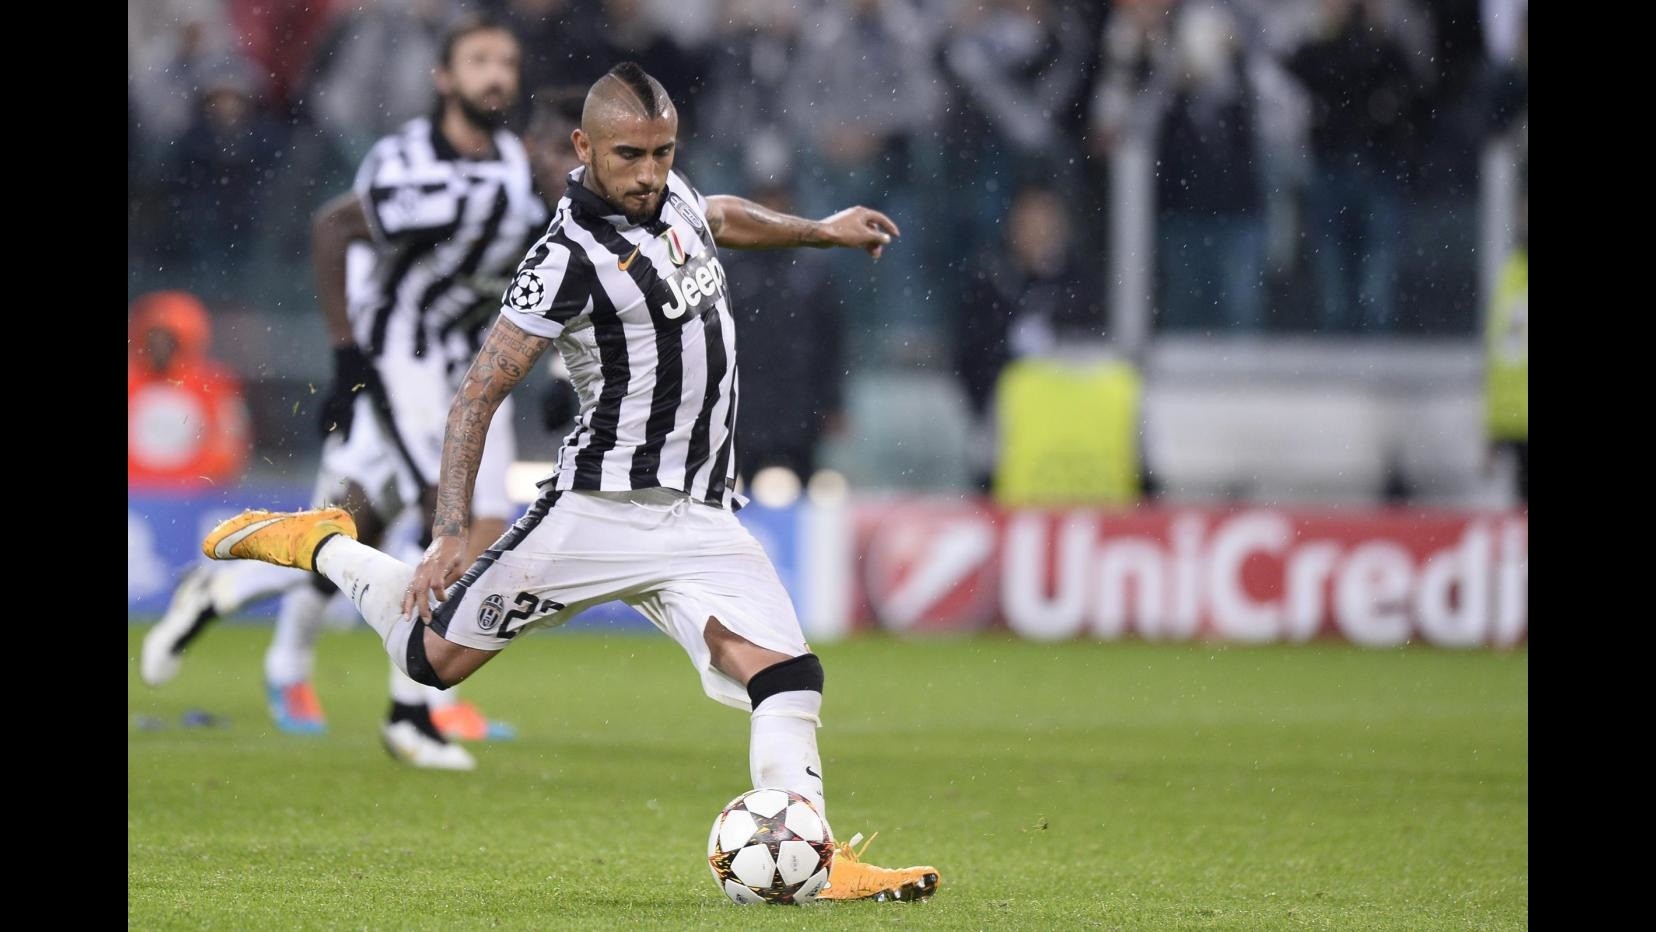 Calcio, Juventus: ginocchio Vidal ok, visita controllo ha dato ottimo esito